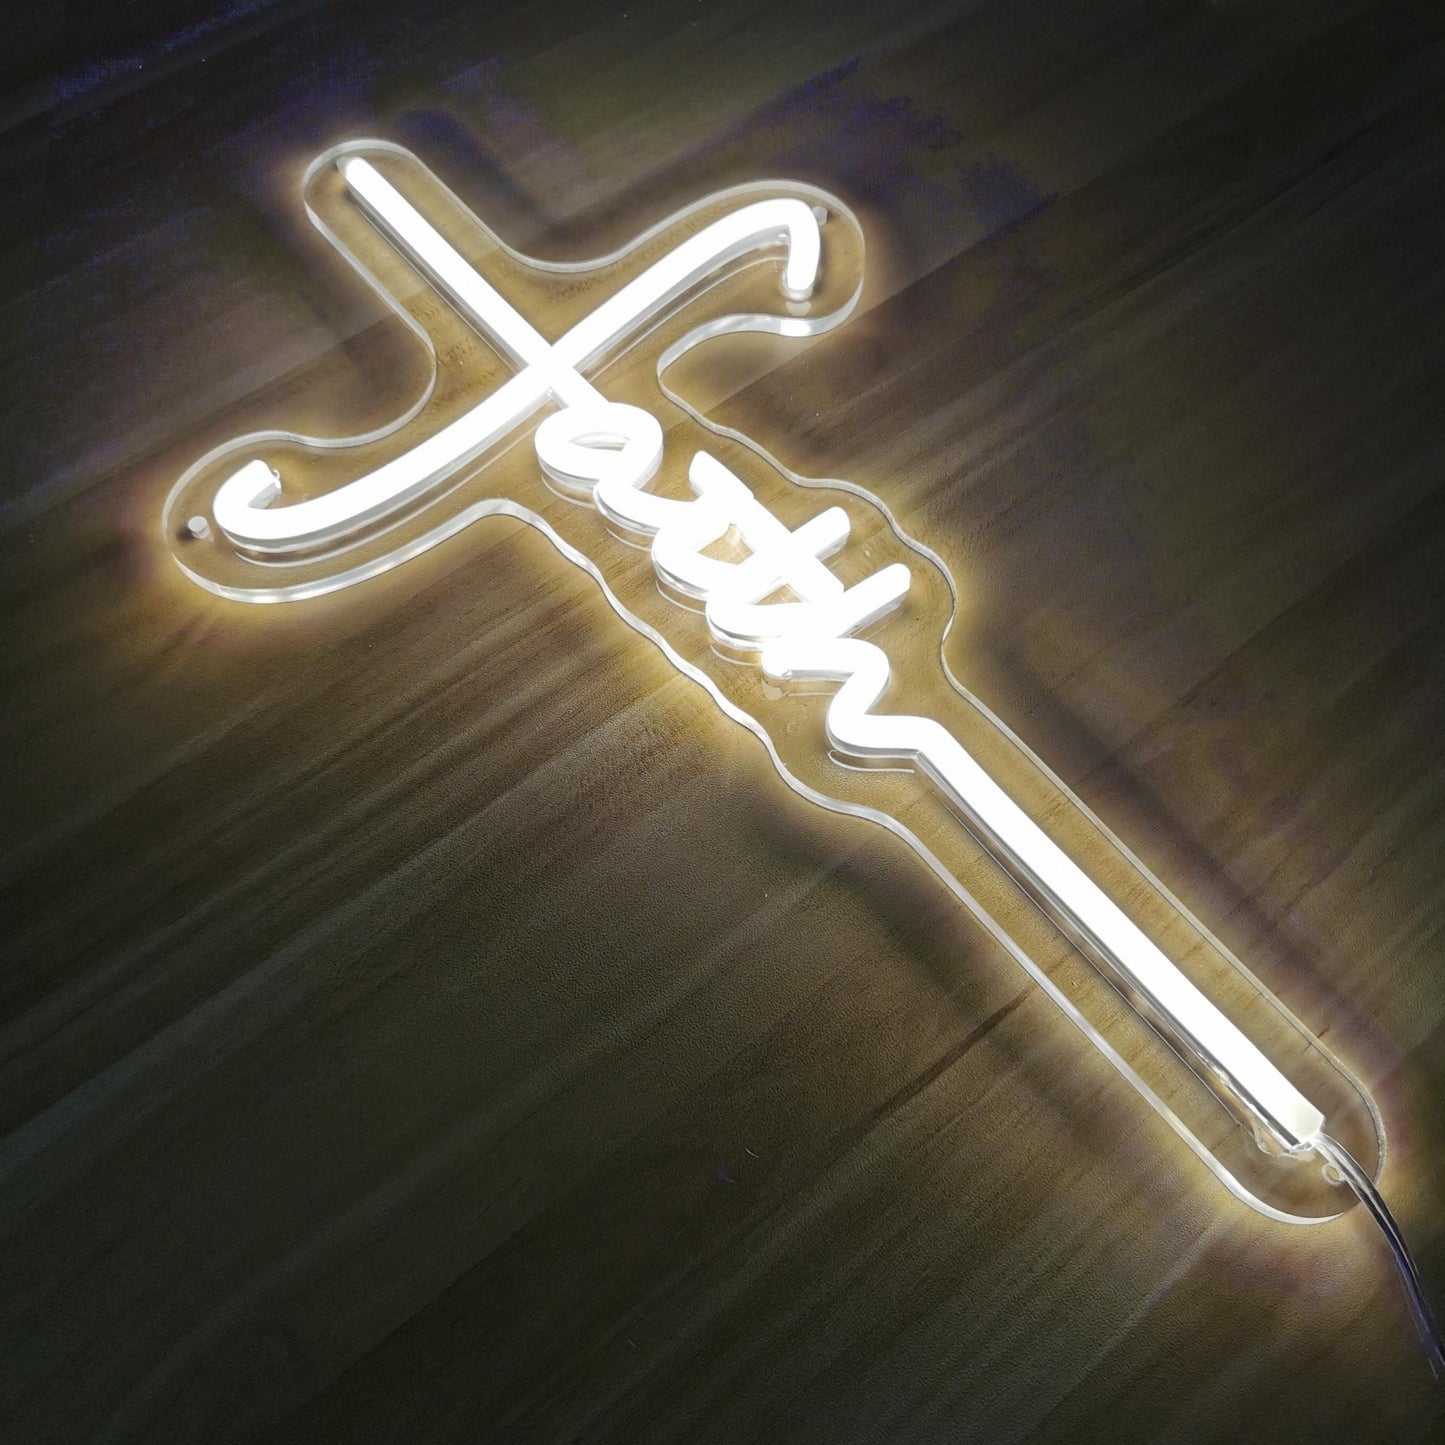 Cross Neon Sign for Wall Decor Cross Faith Christian Neon Sign